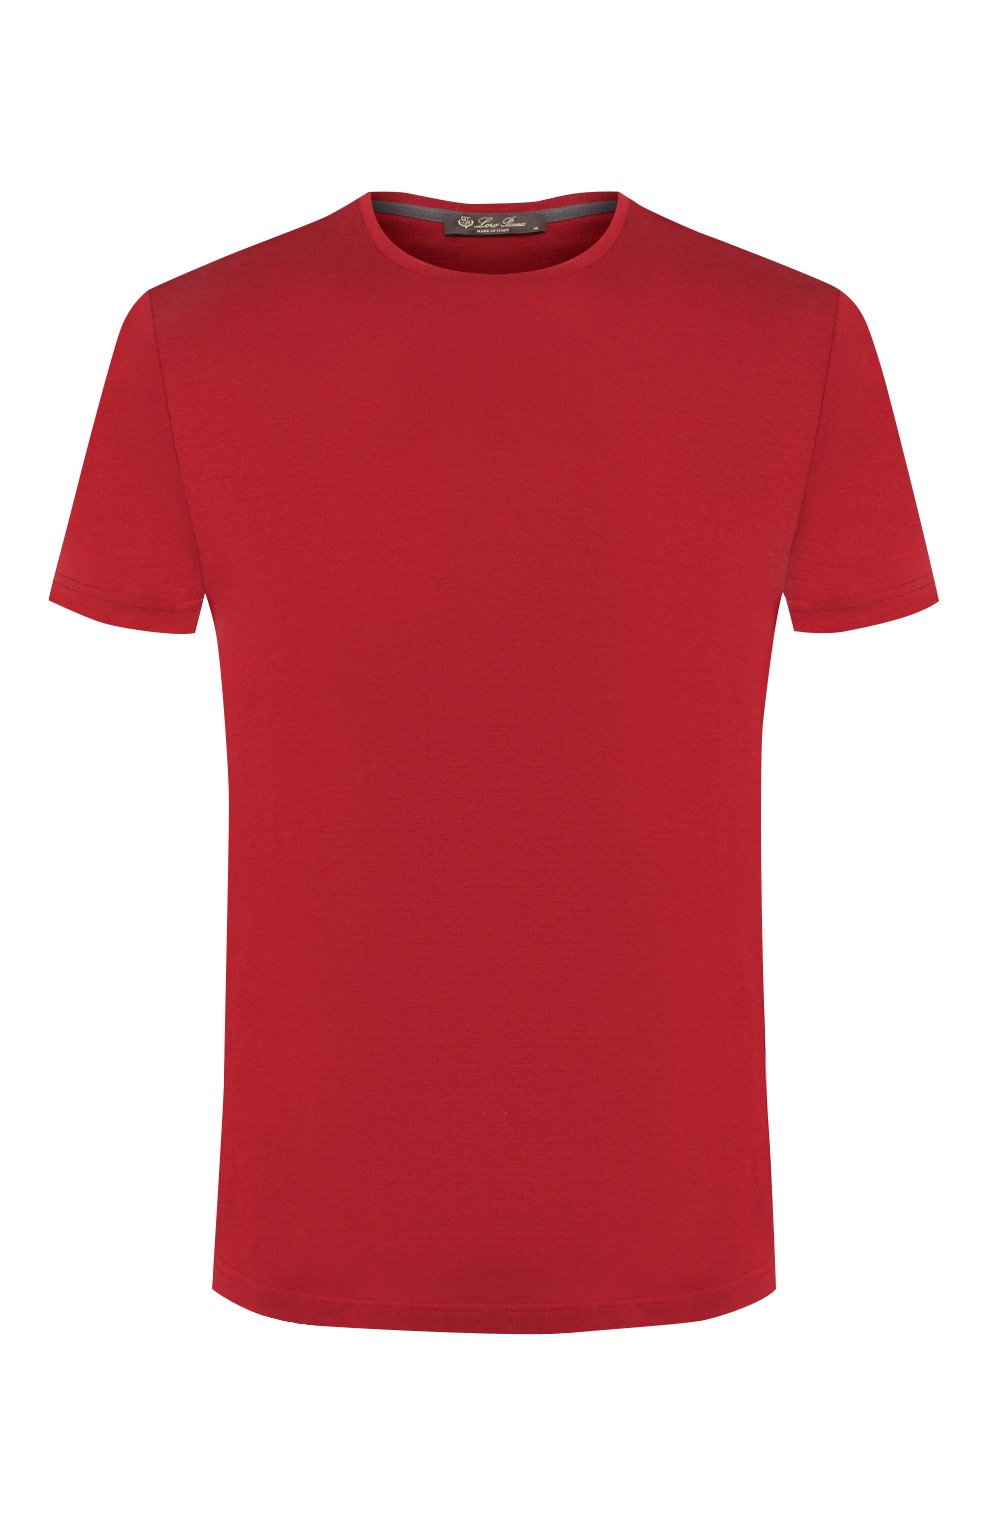 Мужская футболка из шелка и хлопка LORO PIANA красного цвета, арт. FAF6128 | Фото 1 (Материал внешний: Шелк, Хлопок; Big photo: Big photo; Принт: Без принта; Рукава: Короткие; Длина (для топов): Стандартные; Региональные ограничения белый список (Axapta Mercury): RU; Мужское Кросс-КТ: Футболка-одежда; Стили: Кэжуэл)